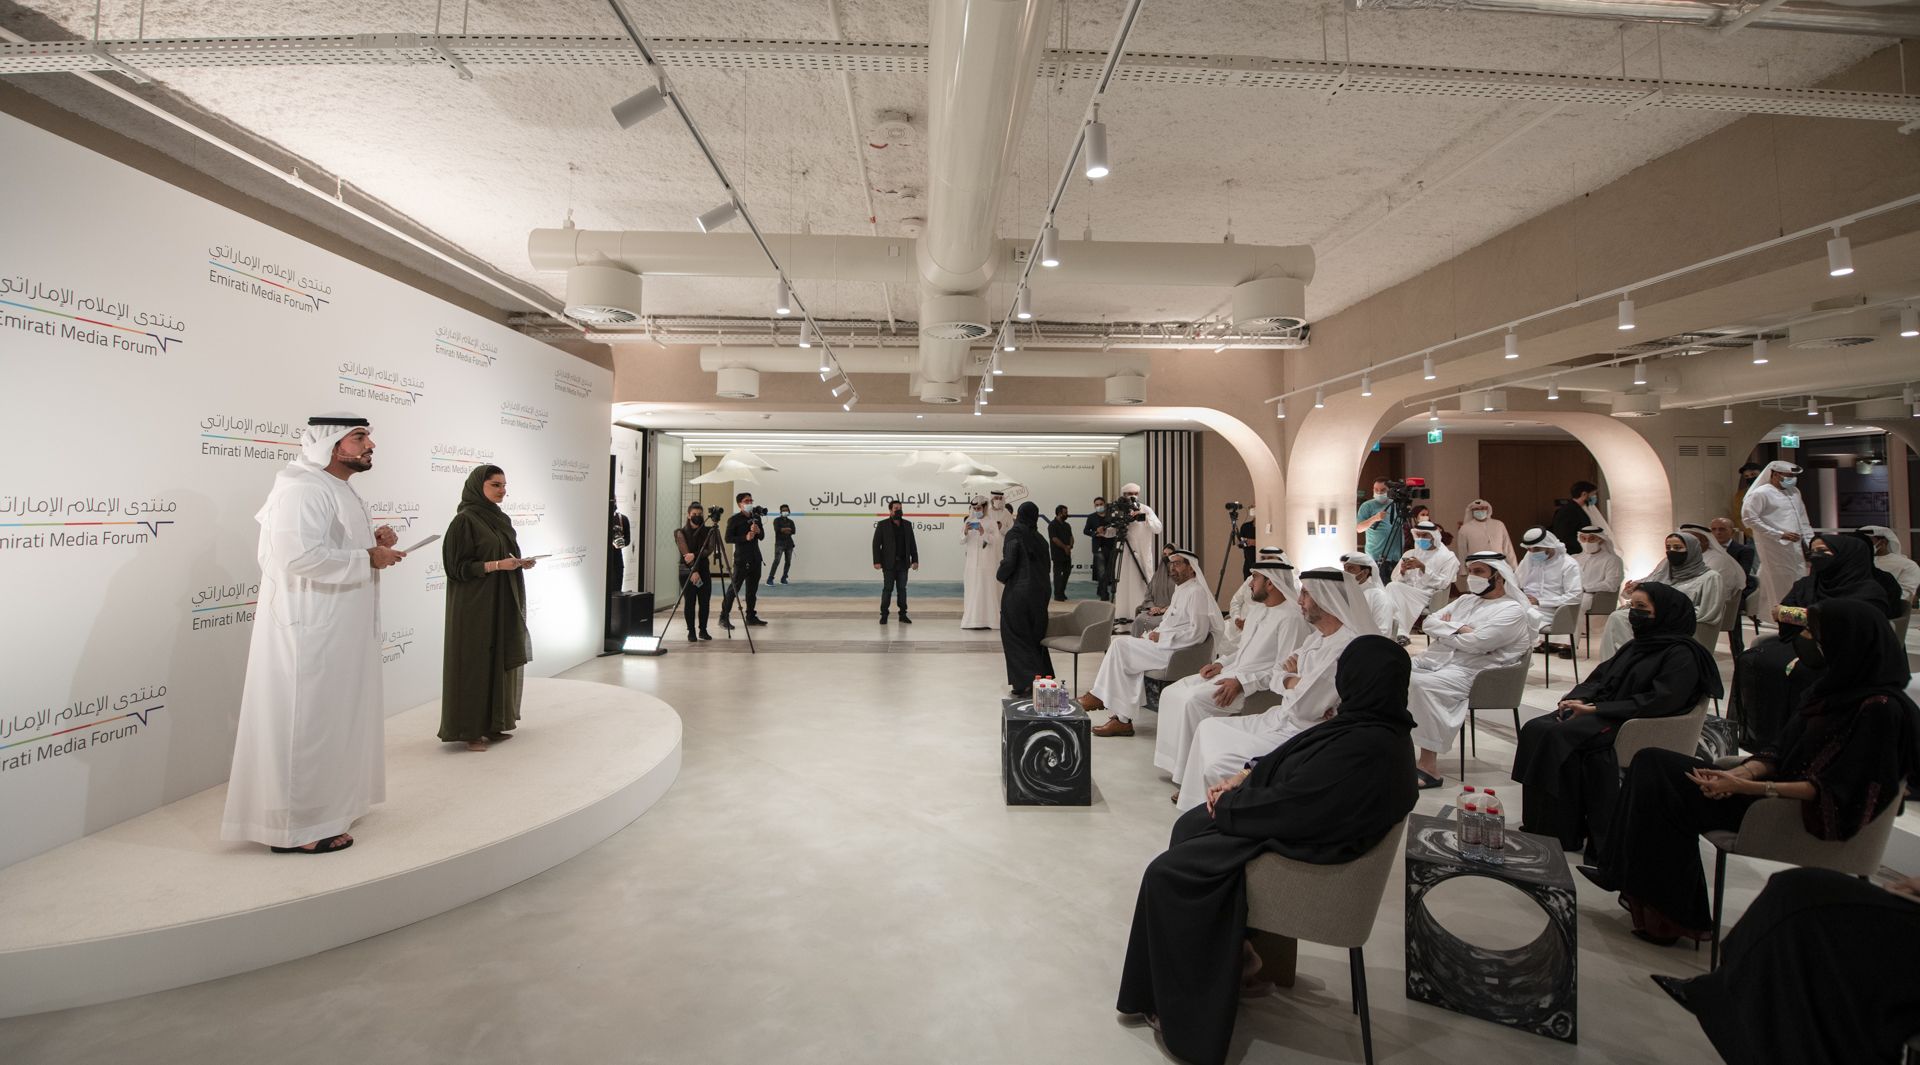 Emirati Media Forum discusses media's role during crises